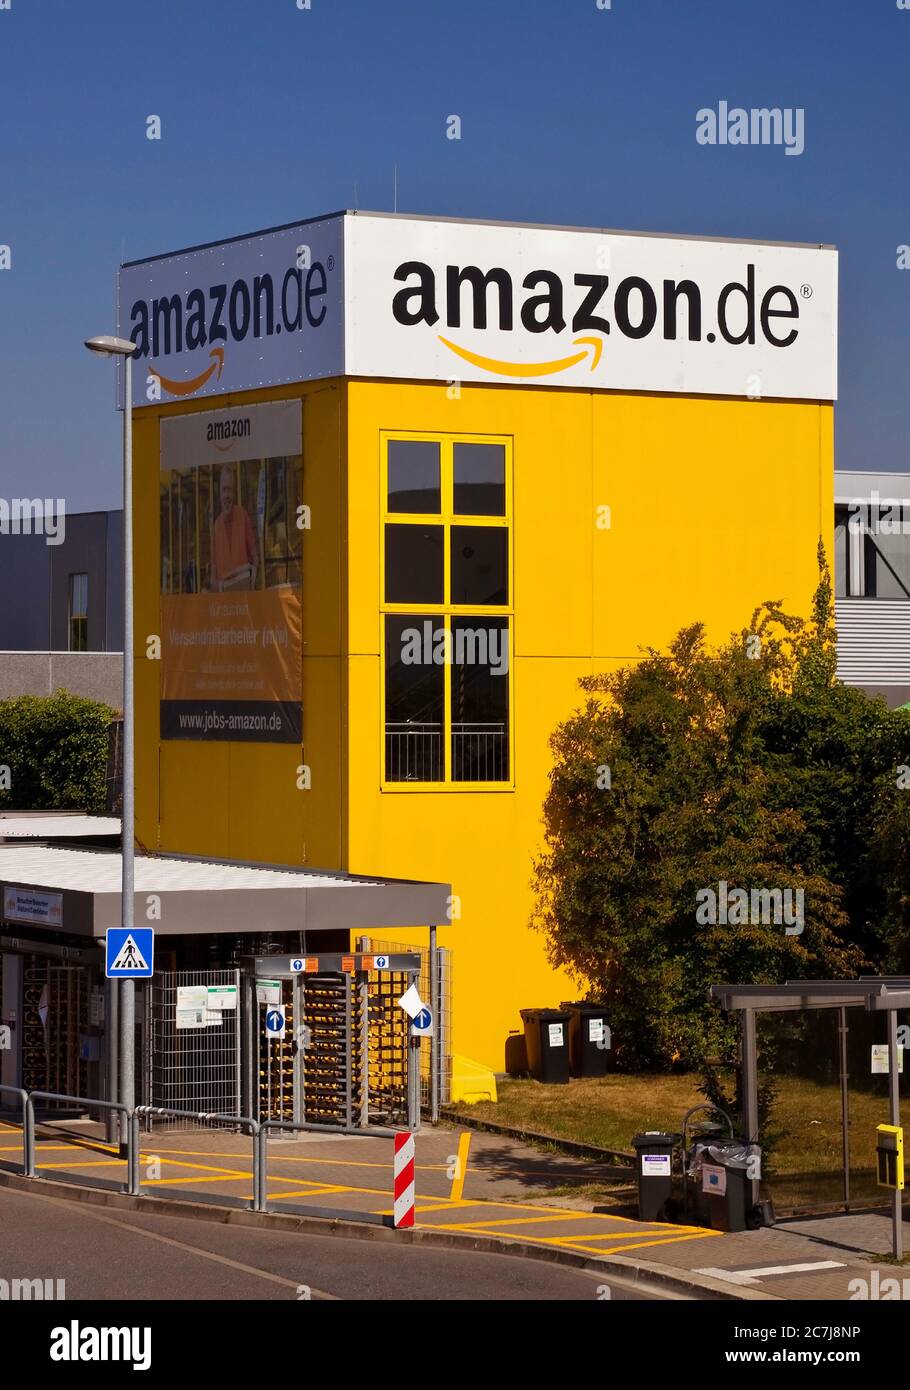 Amazon Logistikzentrum, einer der größten Standorte des Konzerns in Europa, Deutschland, Nordrhein-Westfalen, Ruhrgebiet, Rheinberg Stockfoto